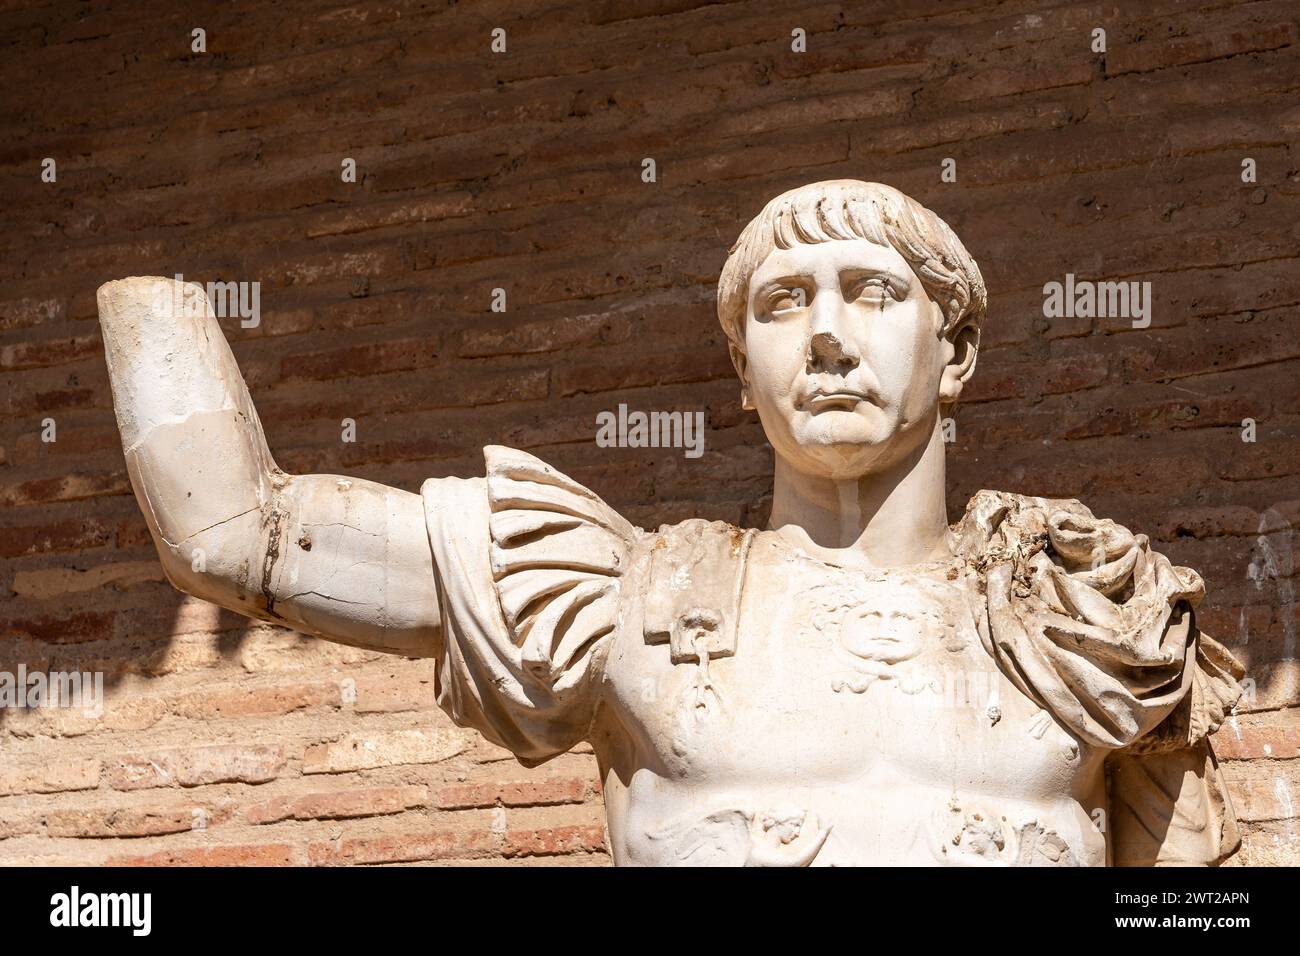 Nahaufnahme der Statue in Ruinen, die einen alten römischen General darstellt Stockfoto